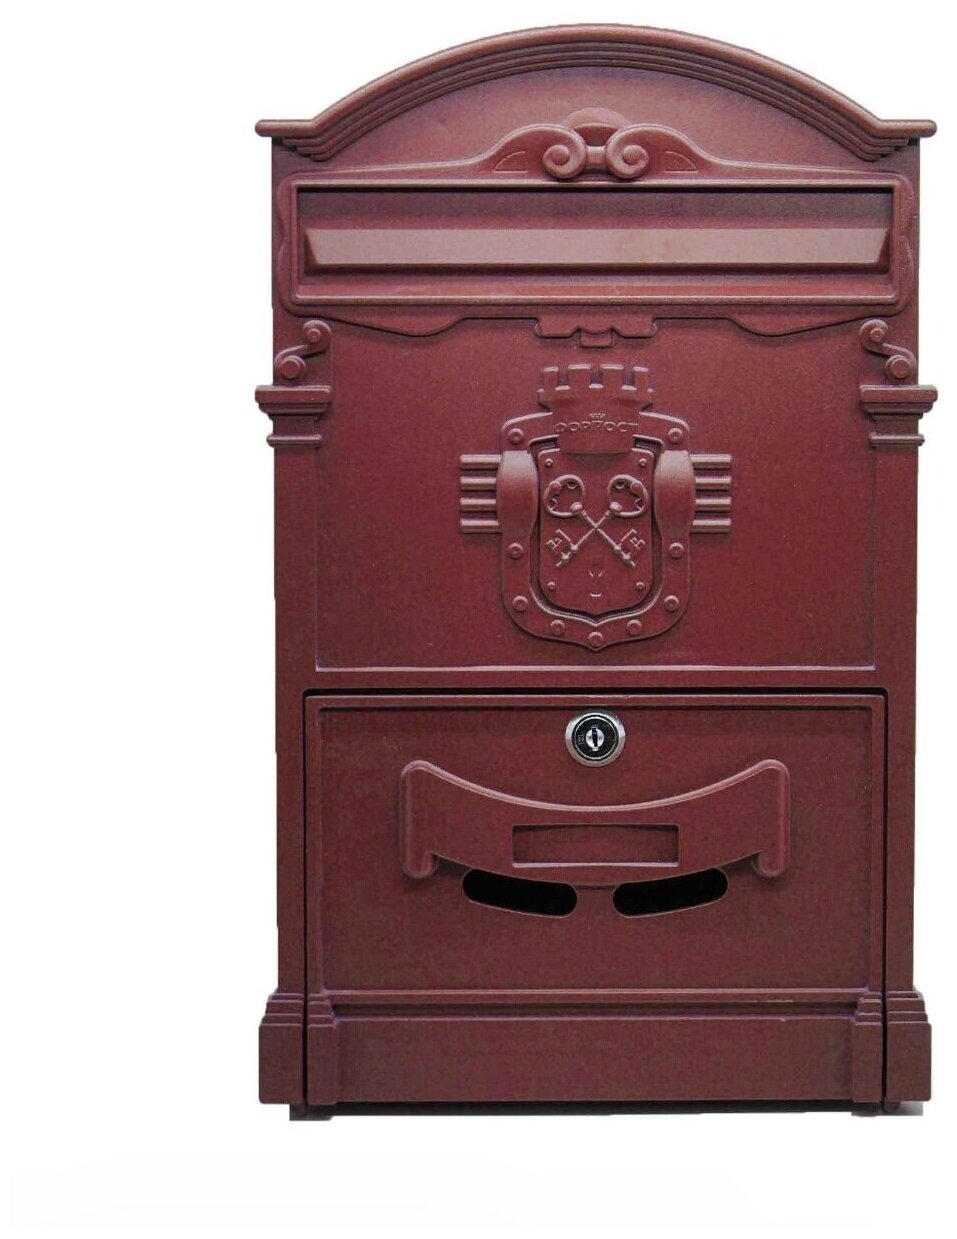 Почтовый ящик "Ключики" цвет: красное вино/ почтовый ящик металлический/ почтовый ящик с замком/ ящик почтовый/ почтовый ящик с замком уличный - фотография № 2